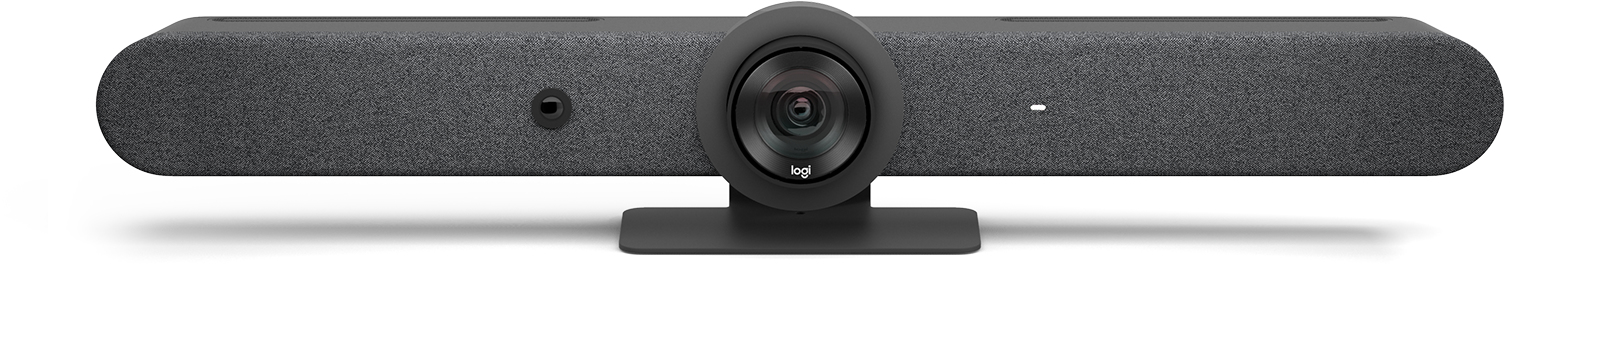 Logitech Kit für Videokonferenzen (Logitech Tap IP, Logitech Rally Bar)